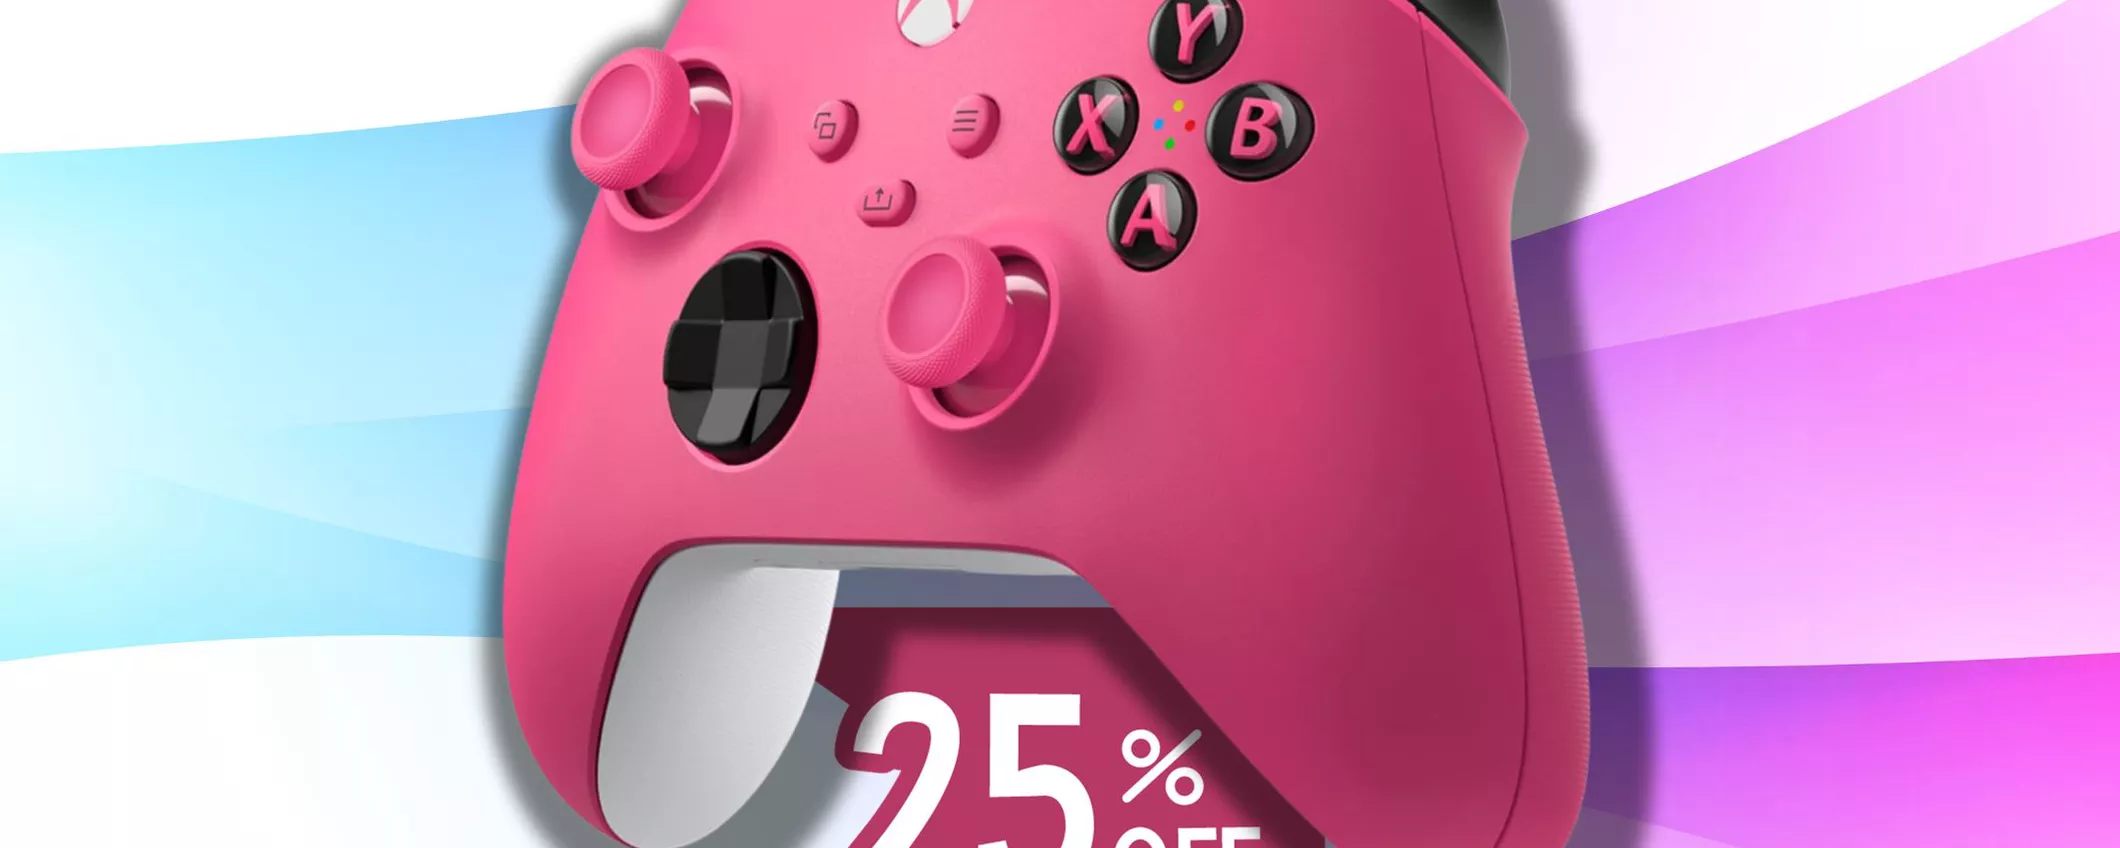 Controller Wireless ROSA per Xbox: RISPARMIA IL 23% e lo paghi pochissimo!